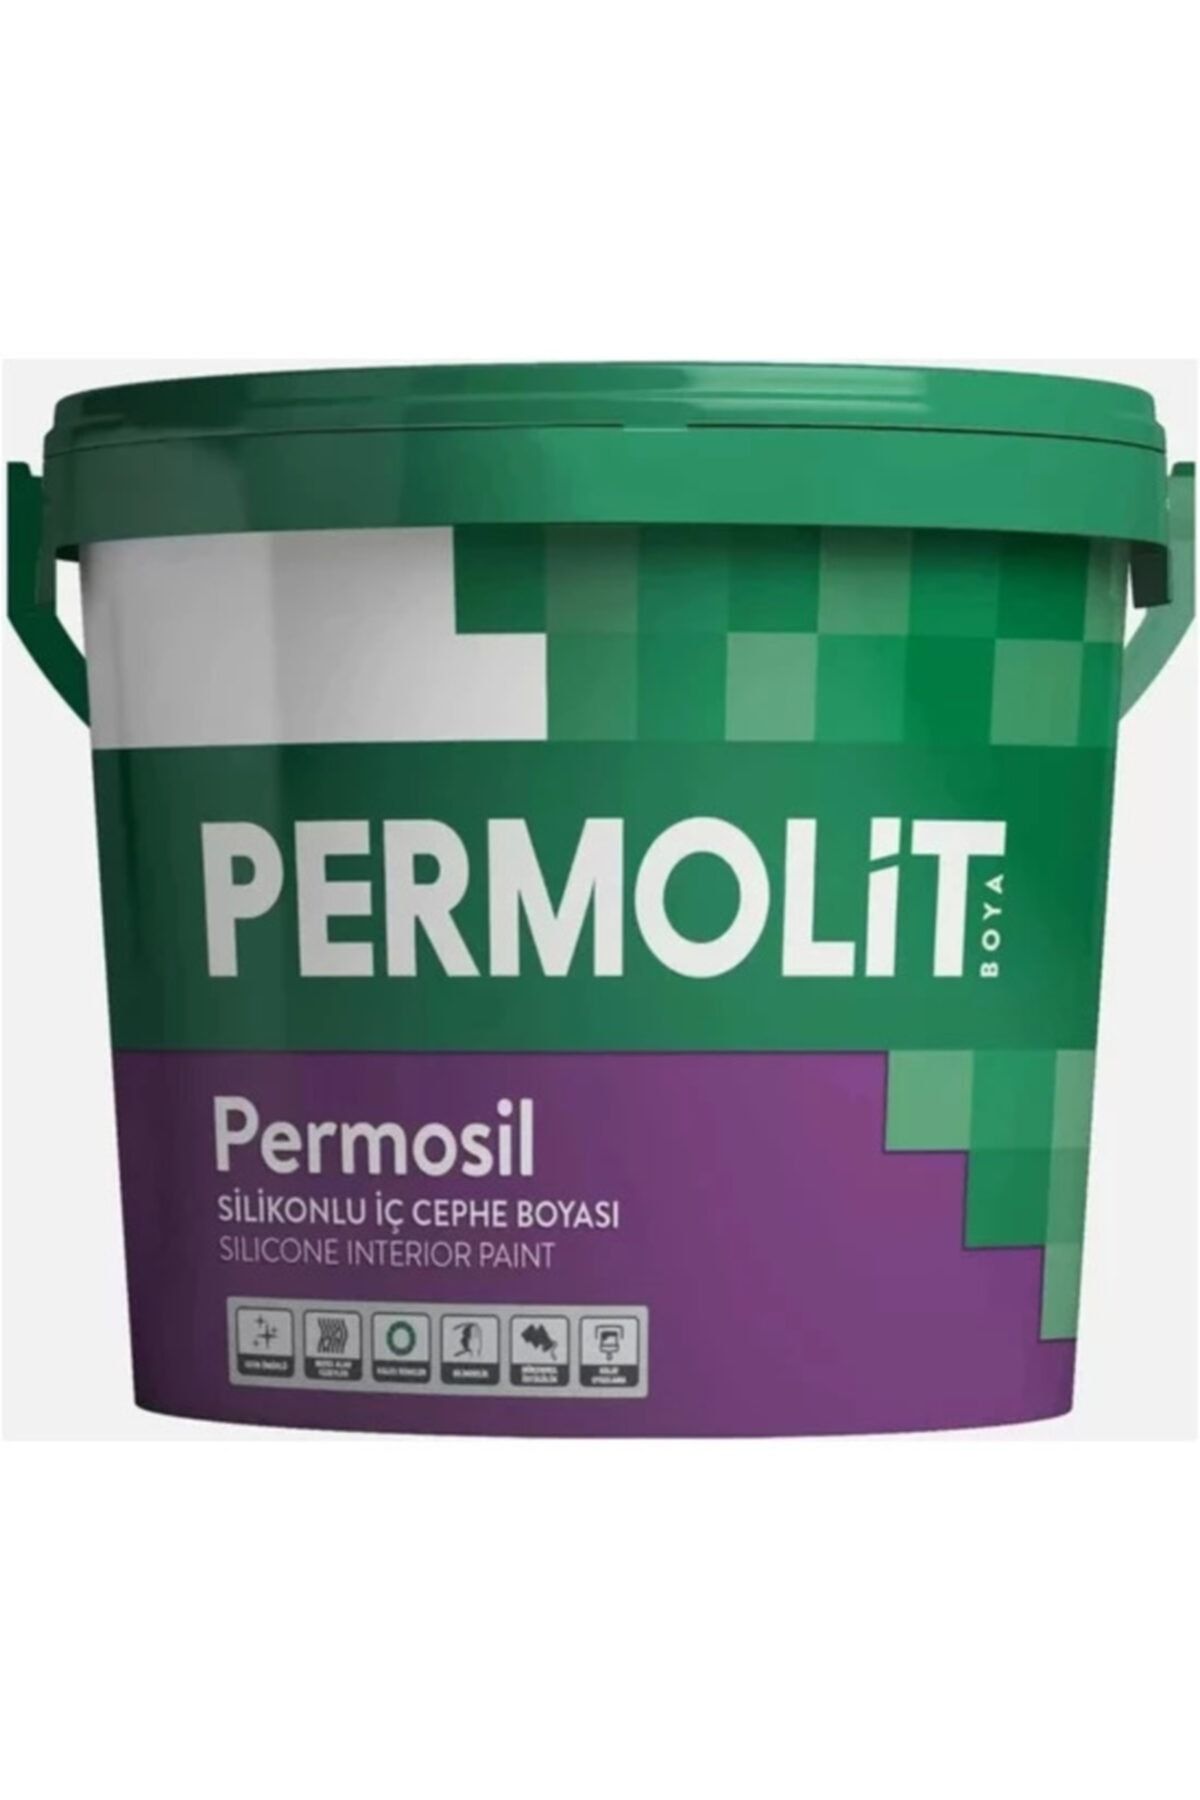 Permolit Permosil Silikonlu İç Cephe Boyası 10 Kg